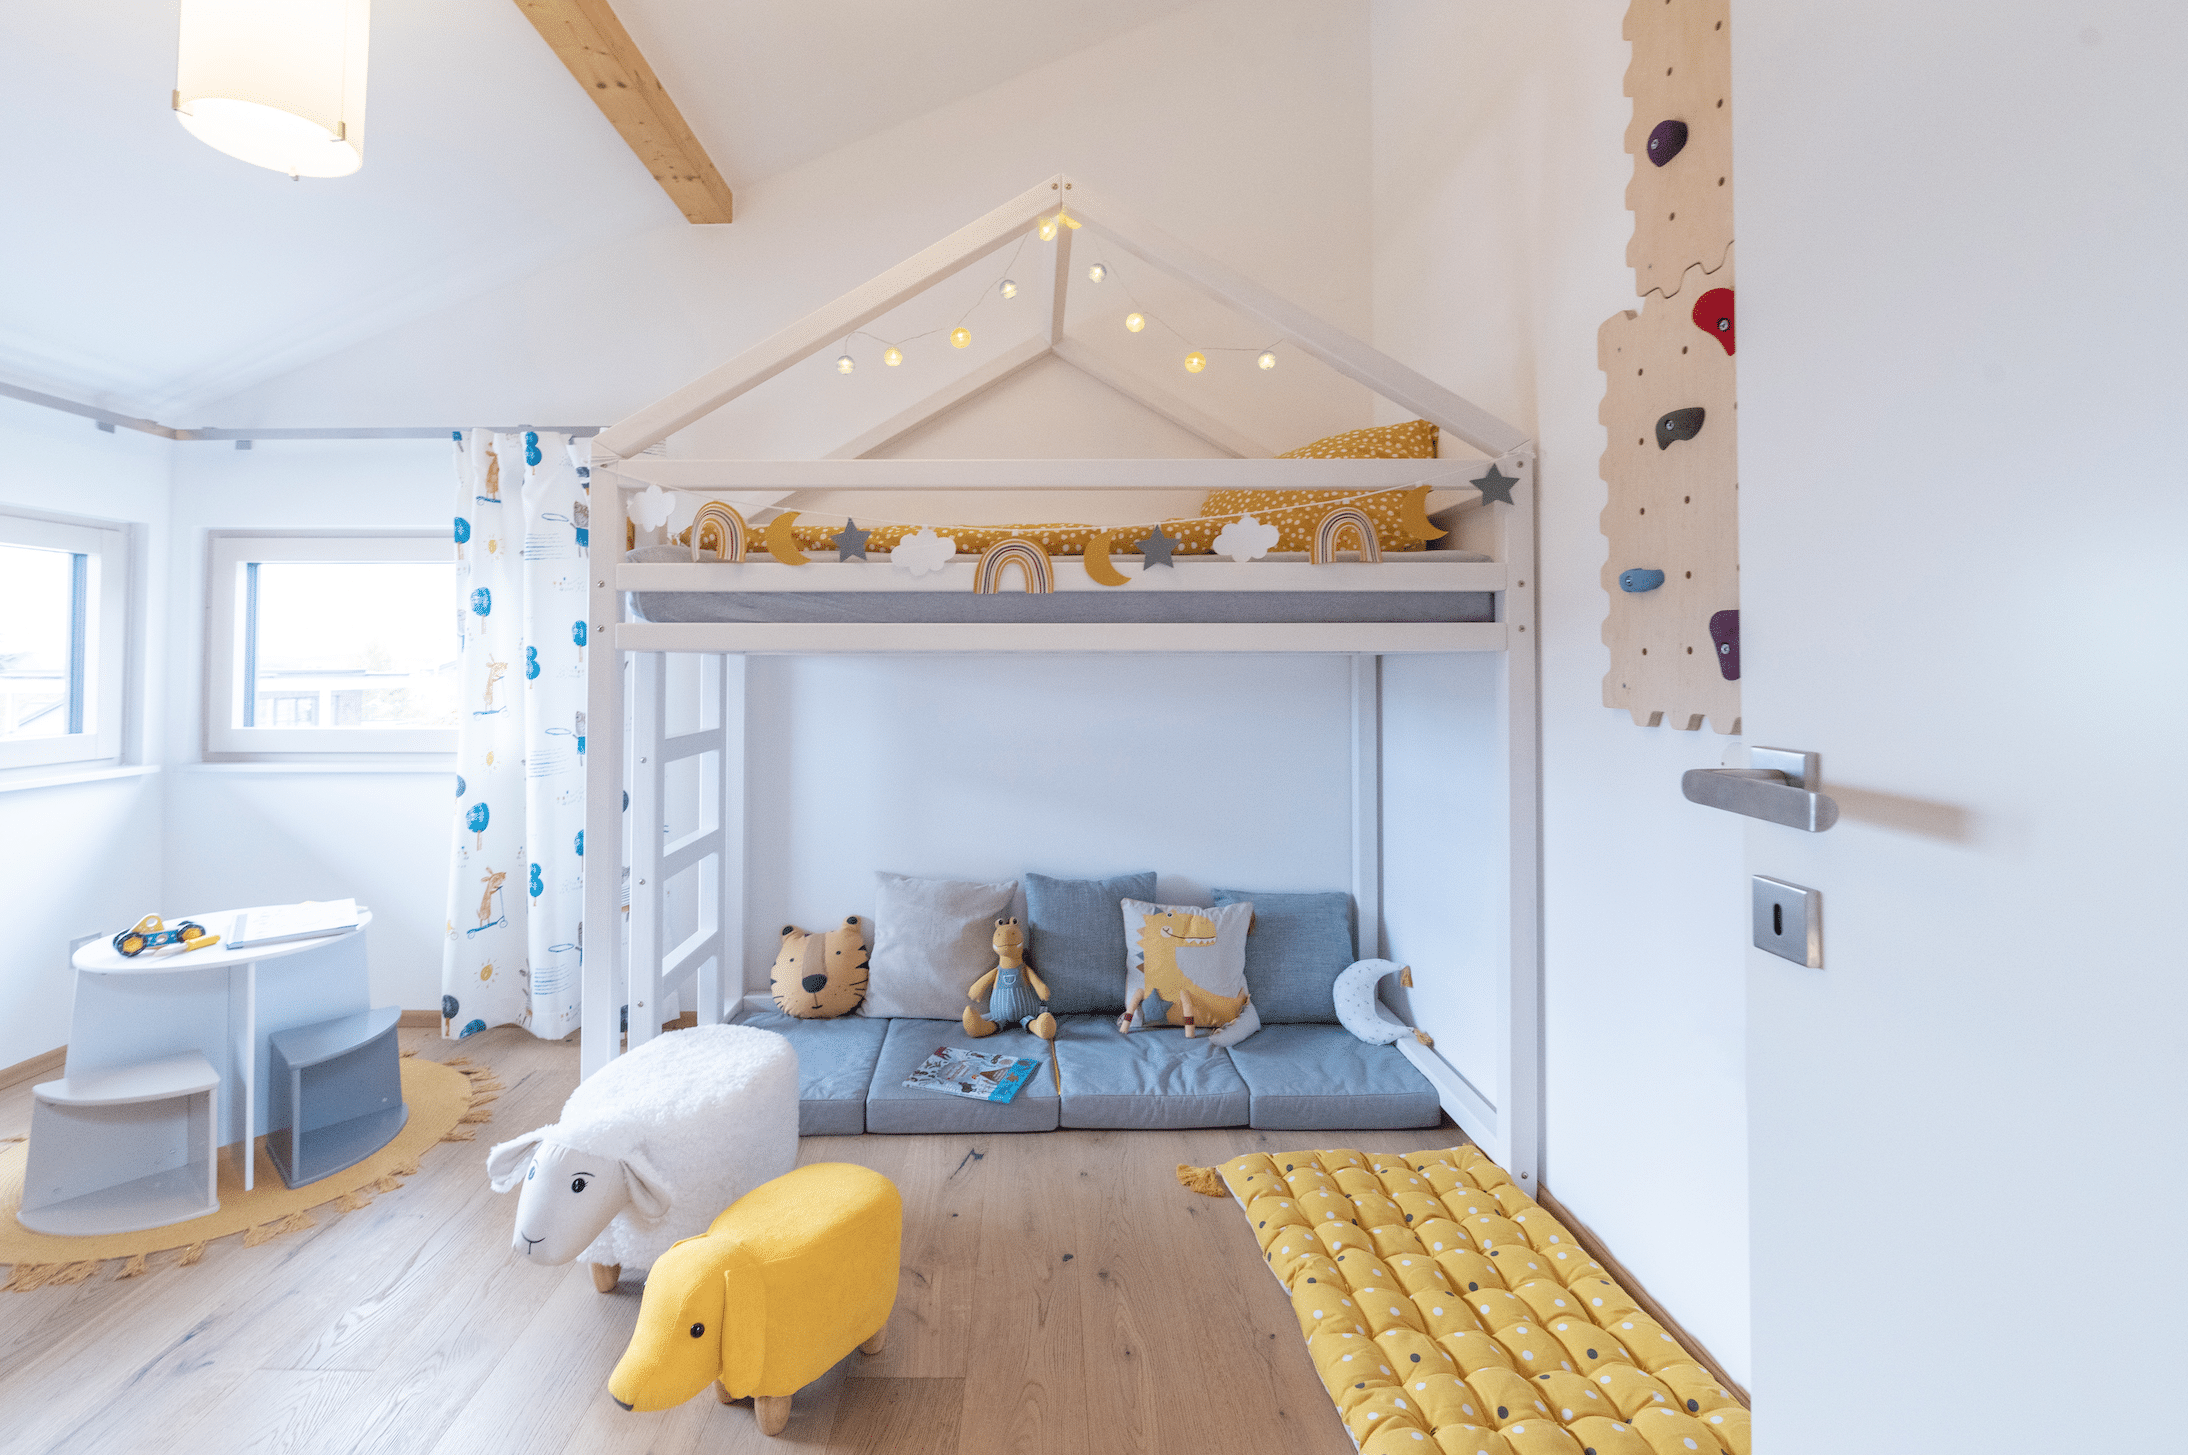 Hartl Haus zeigt ein liebevoll gestaltetes Kinderzimmer mit Stockbett in weiß, vielen Kuscheltieren und Spielzeug.